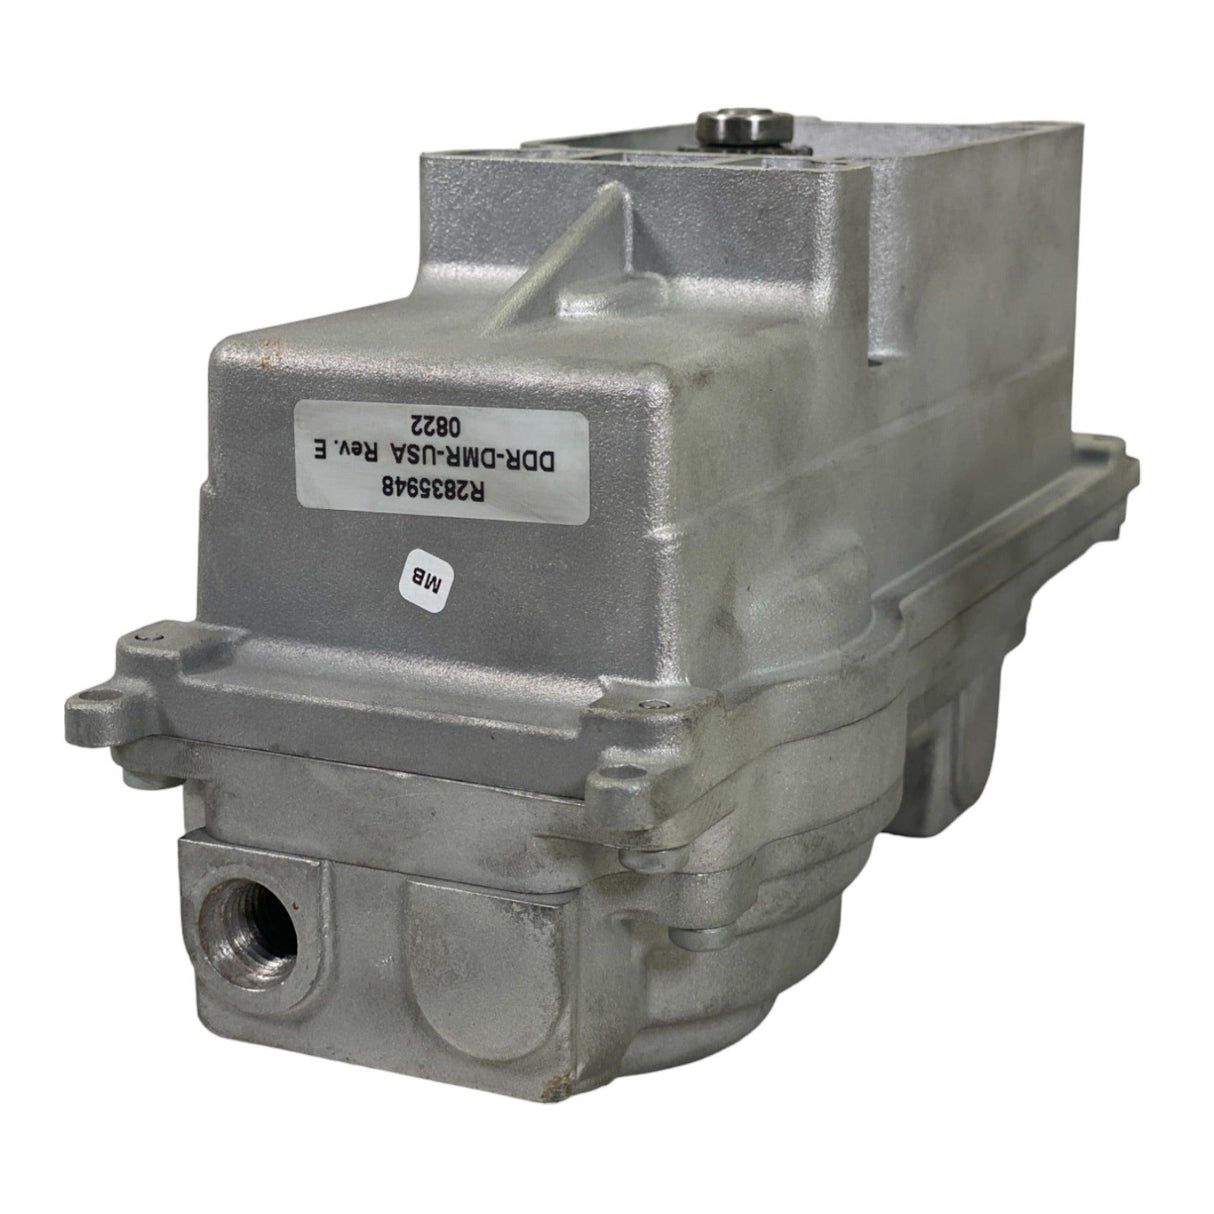 23539569 Genuine Detroit Diesel Turbo Actuator Kit For Detroit Diesel Series 60